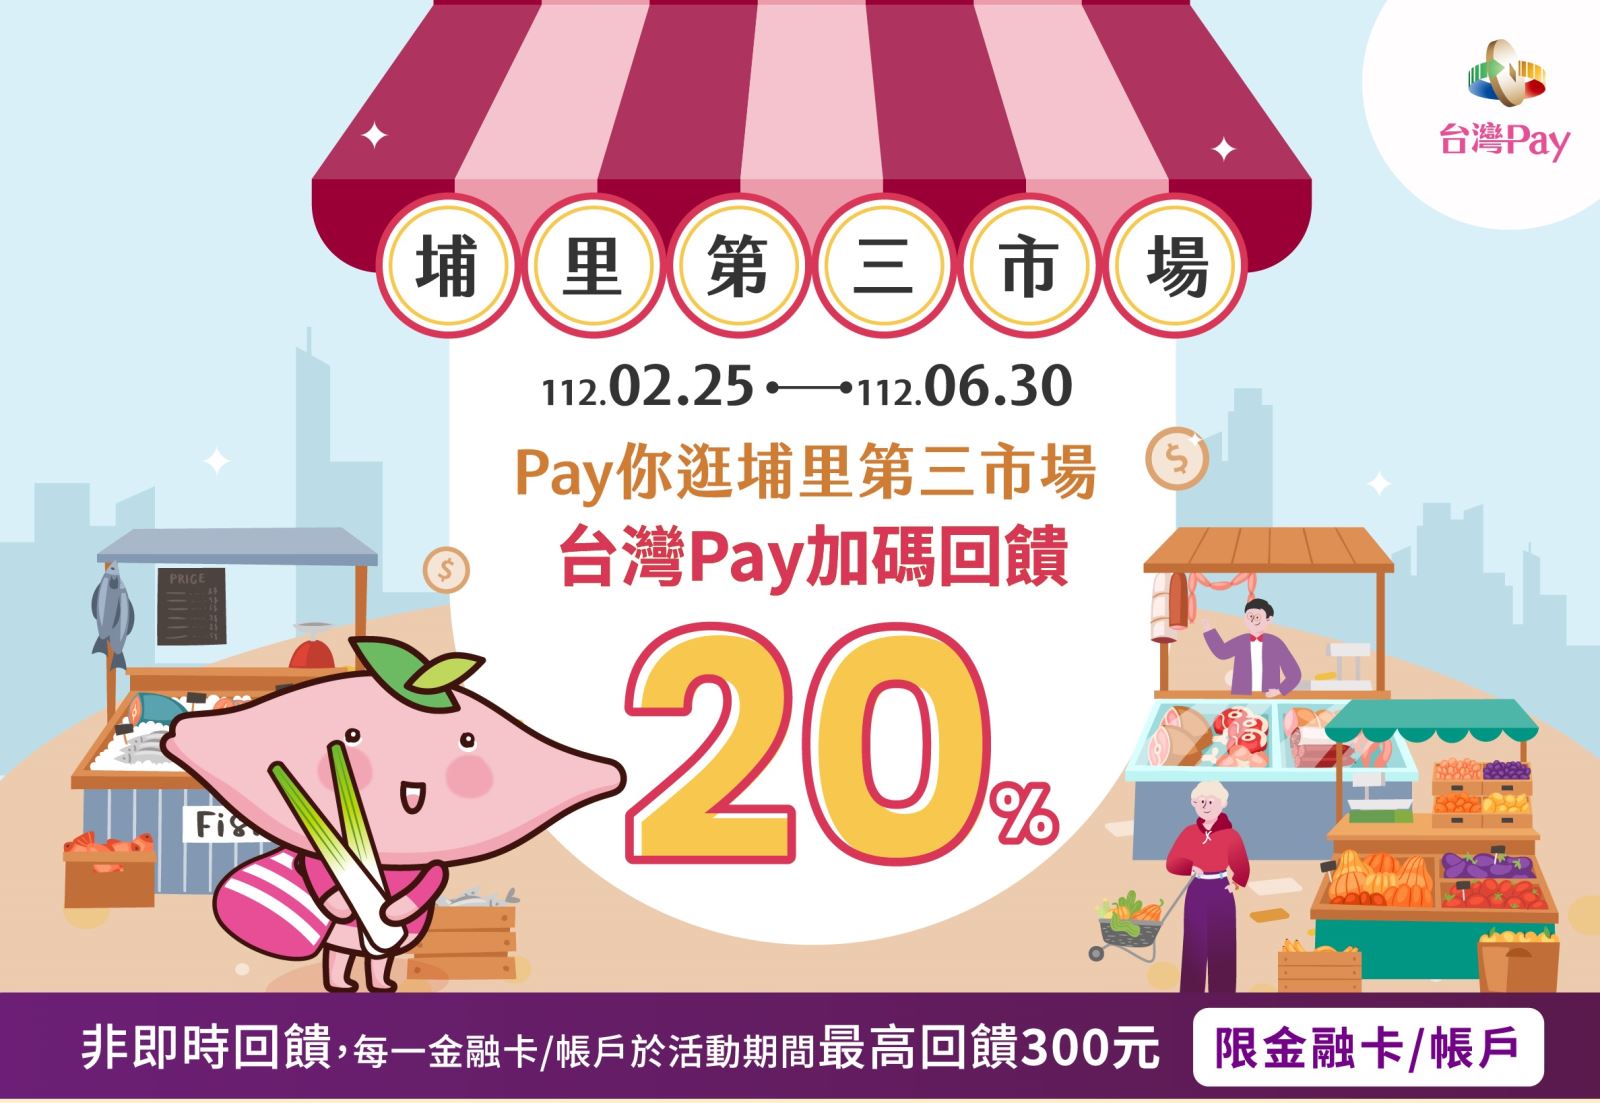 活動期間於活動地點以「台灣Pay」QR Code掃碼支付，單筆消費不限金額可享20%現金回饋，每一金融卡號/帳戶於活動期間最高回饋新臺幣300元為限。